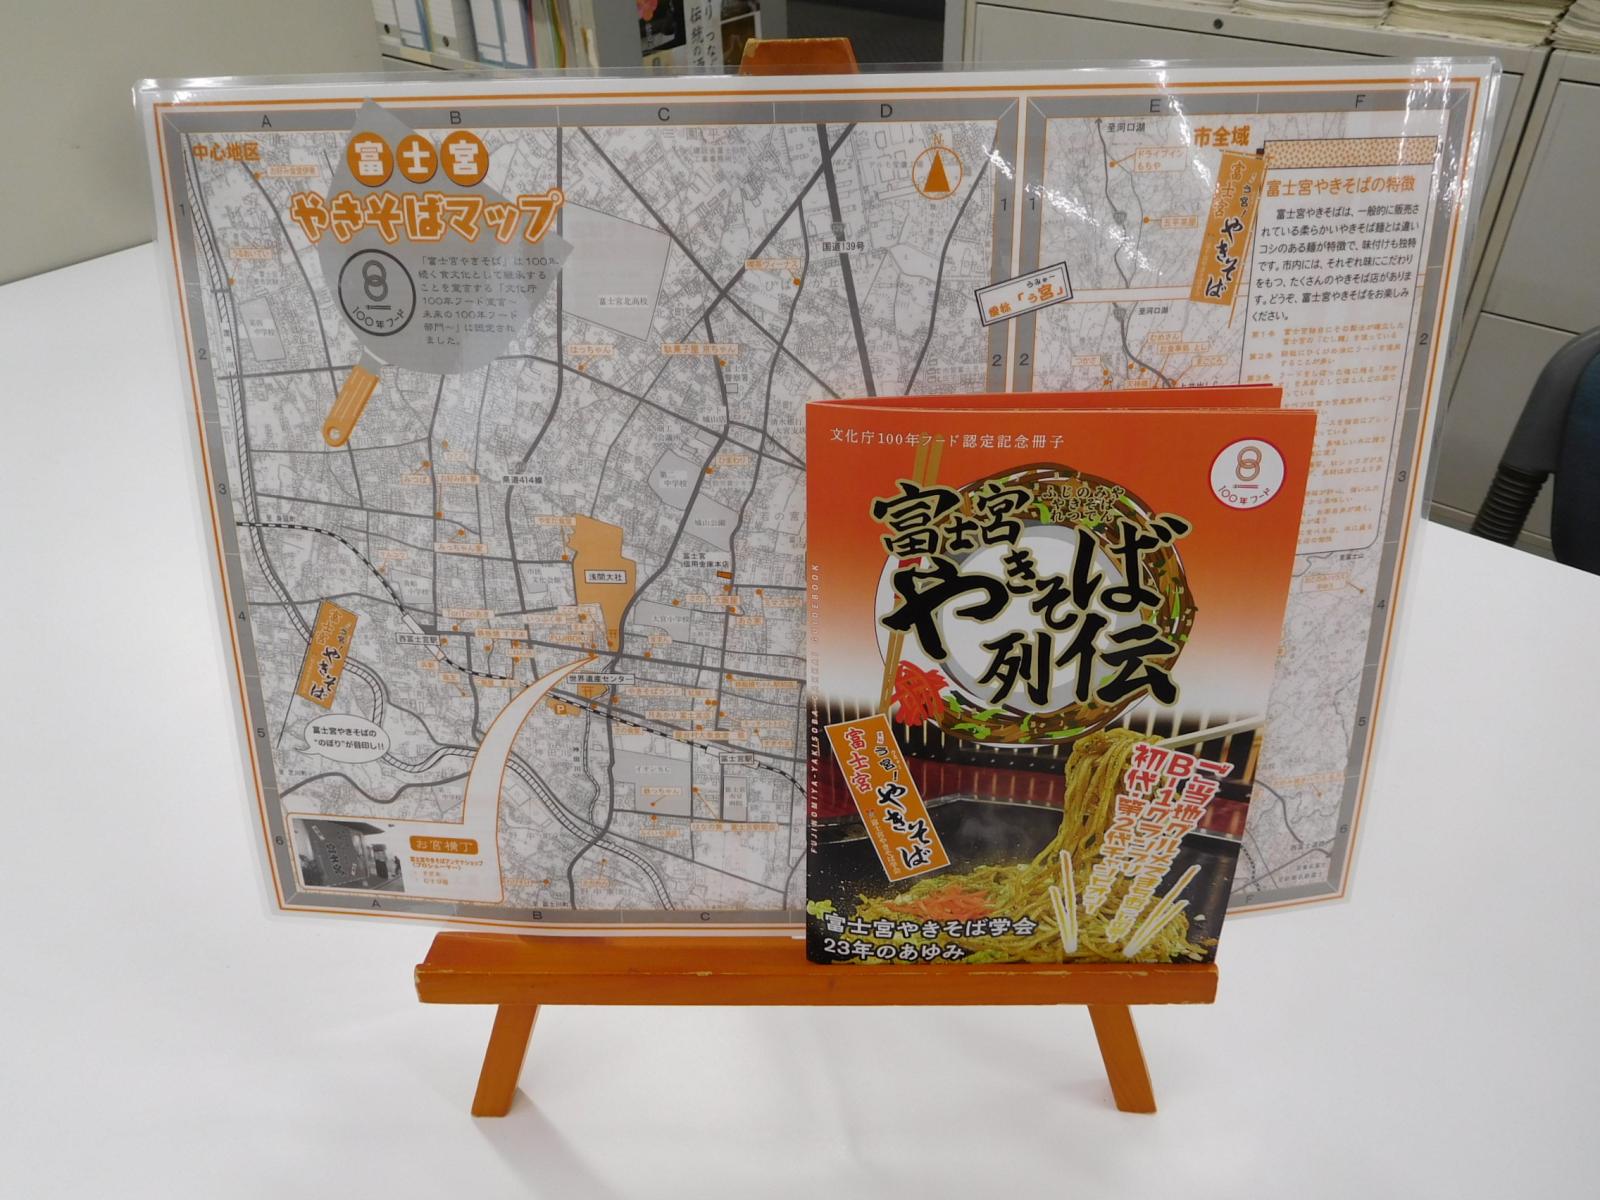 「富士宮やきそばマップ」と「富士宮やきそば列伝」